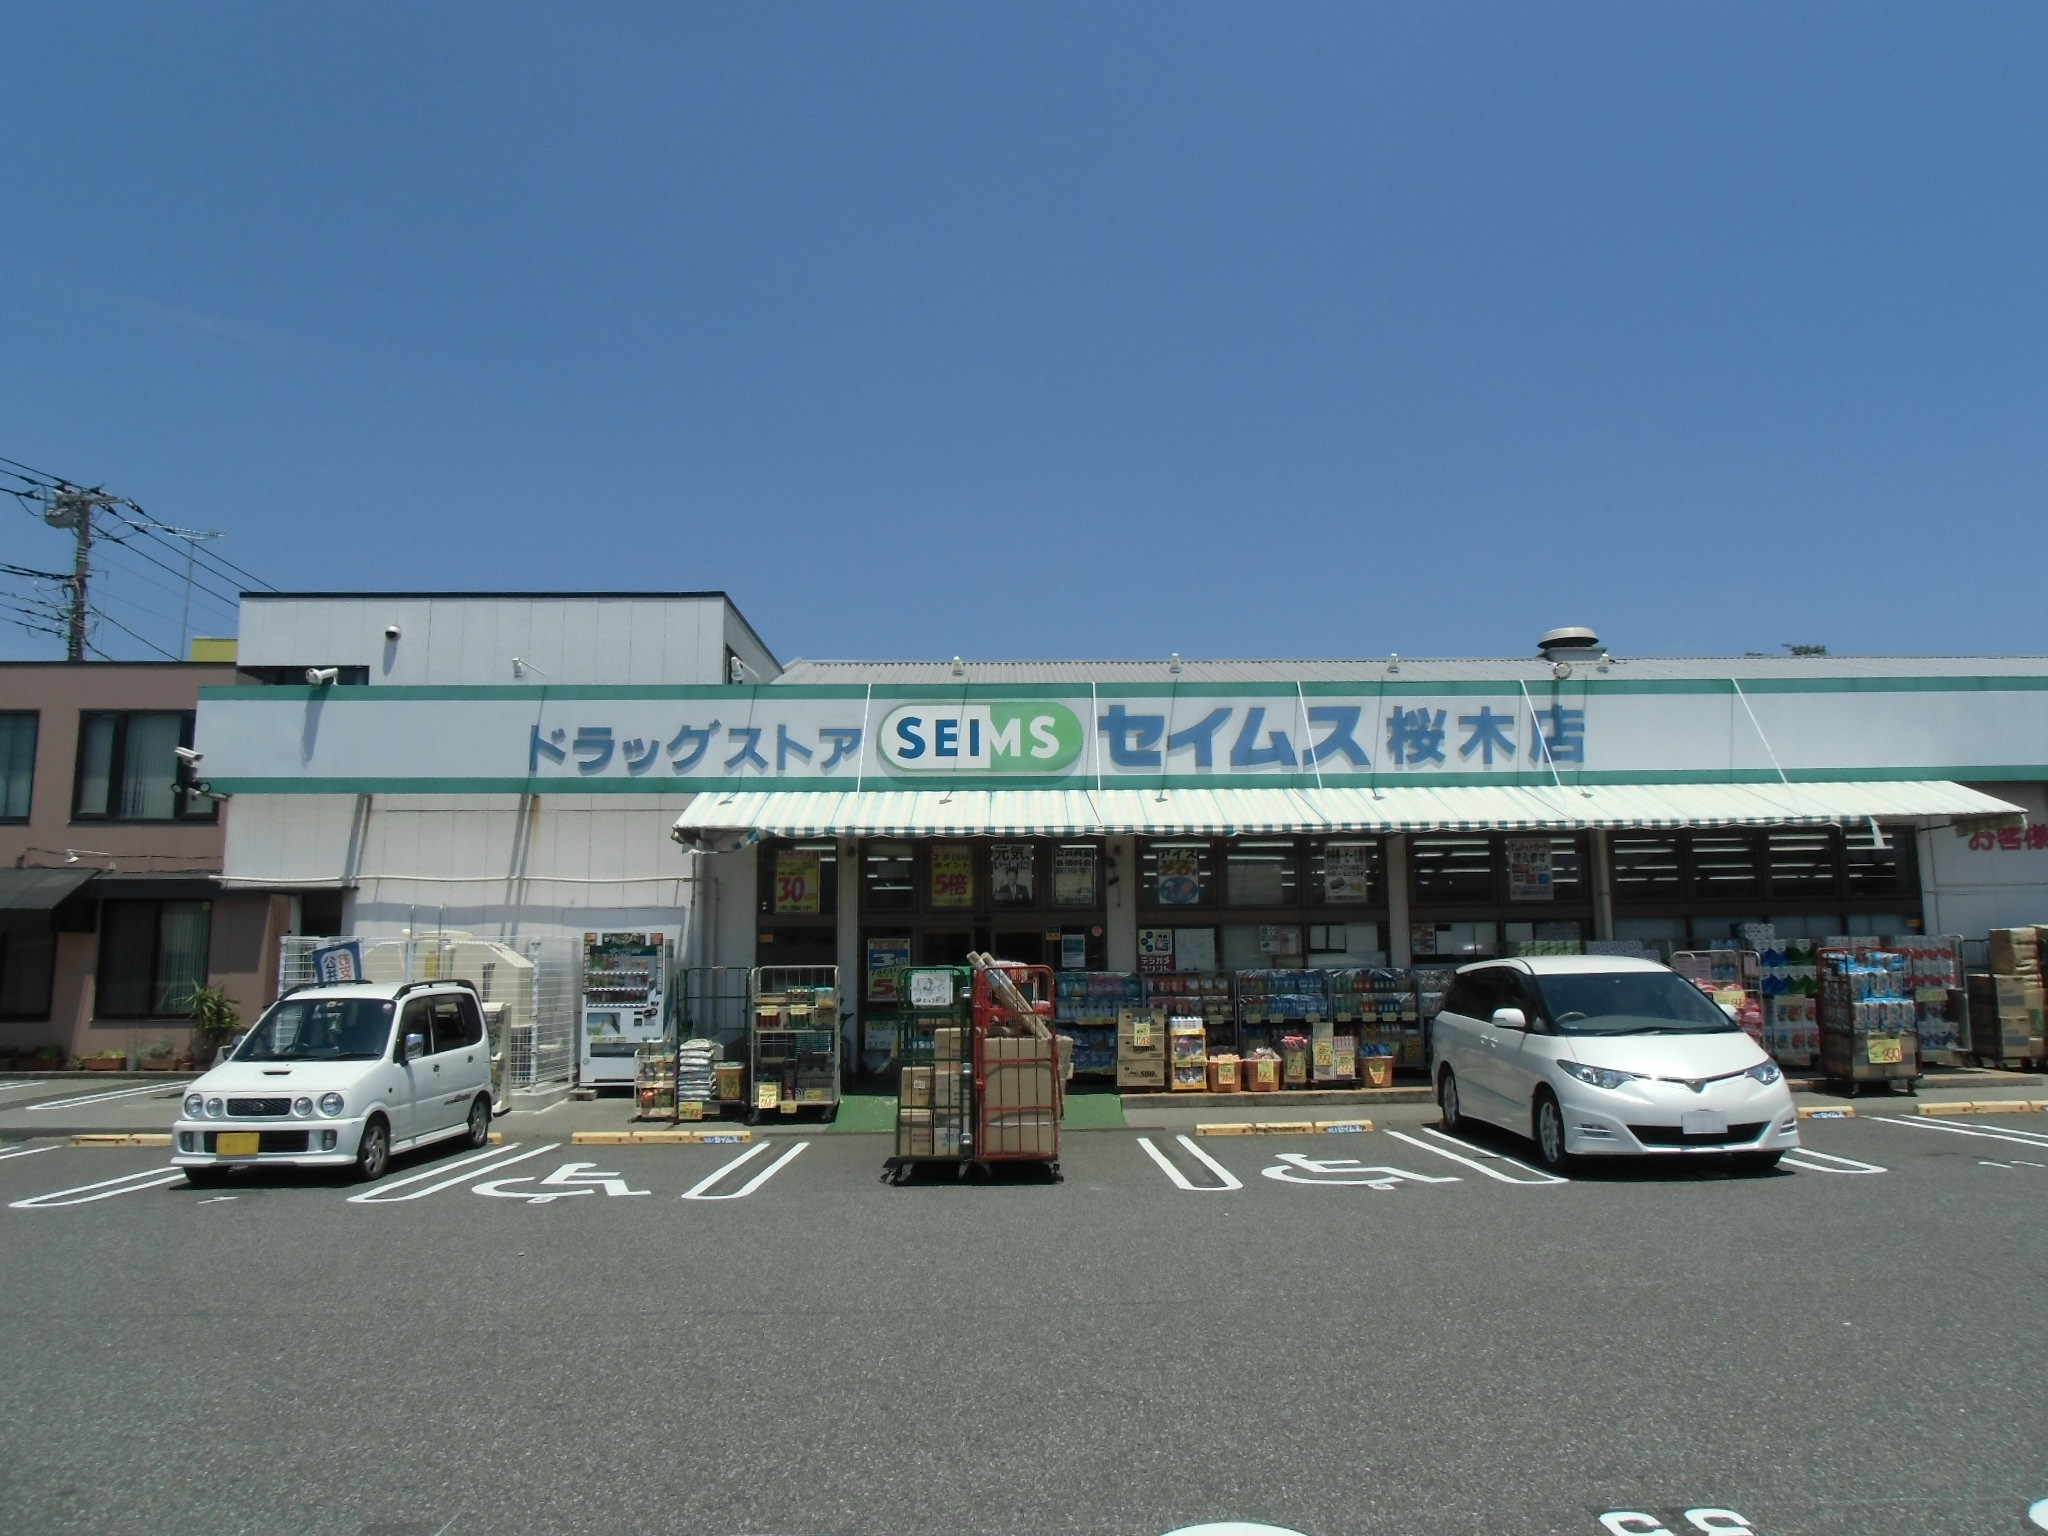 Dorakkusutoa. Drag Seimusu Sakuragi shop 208m until (drugstore)